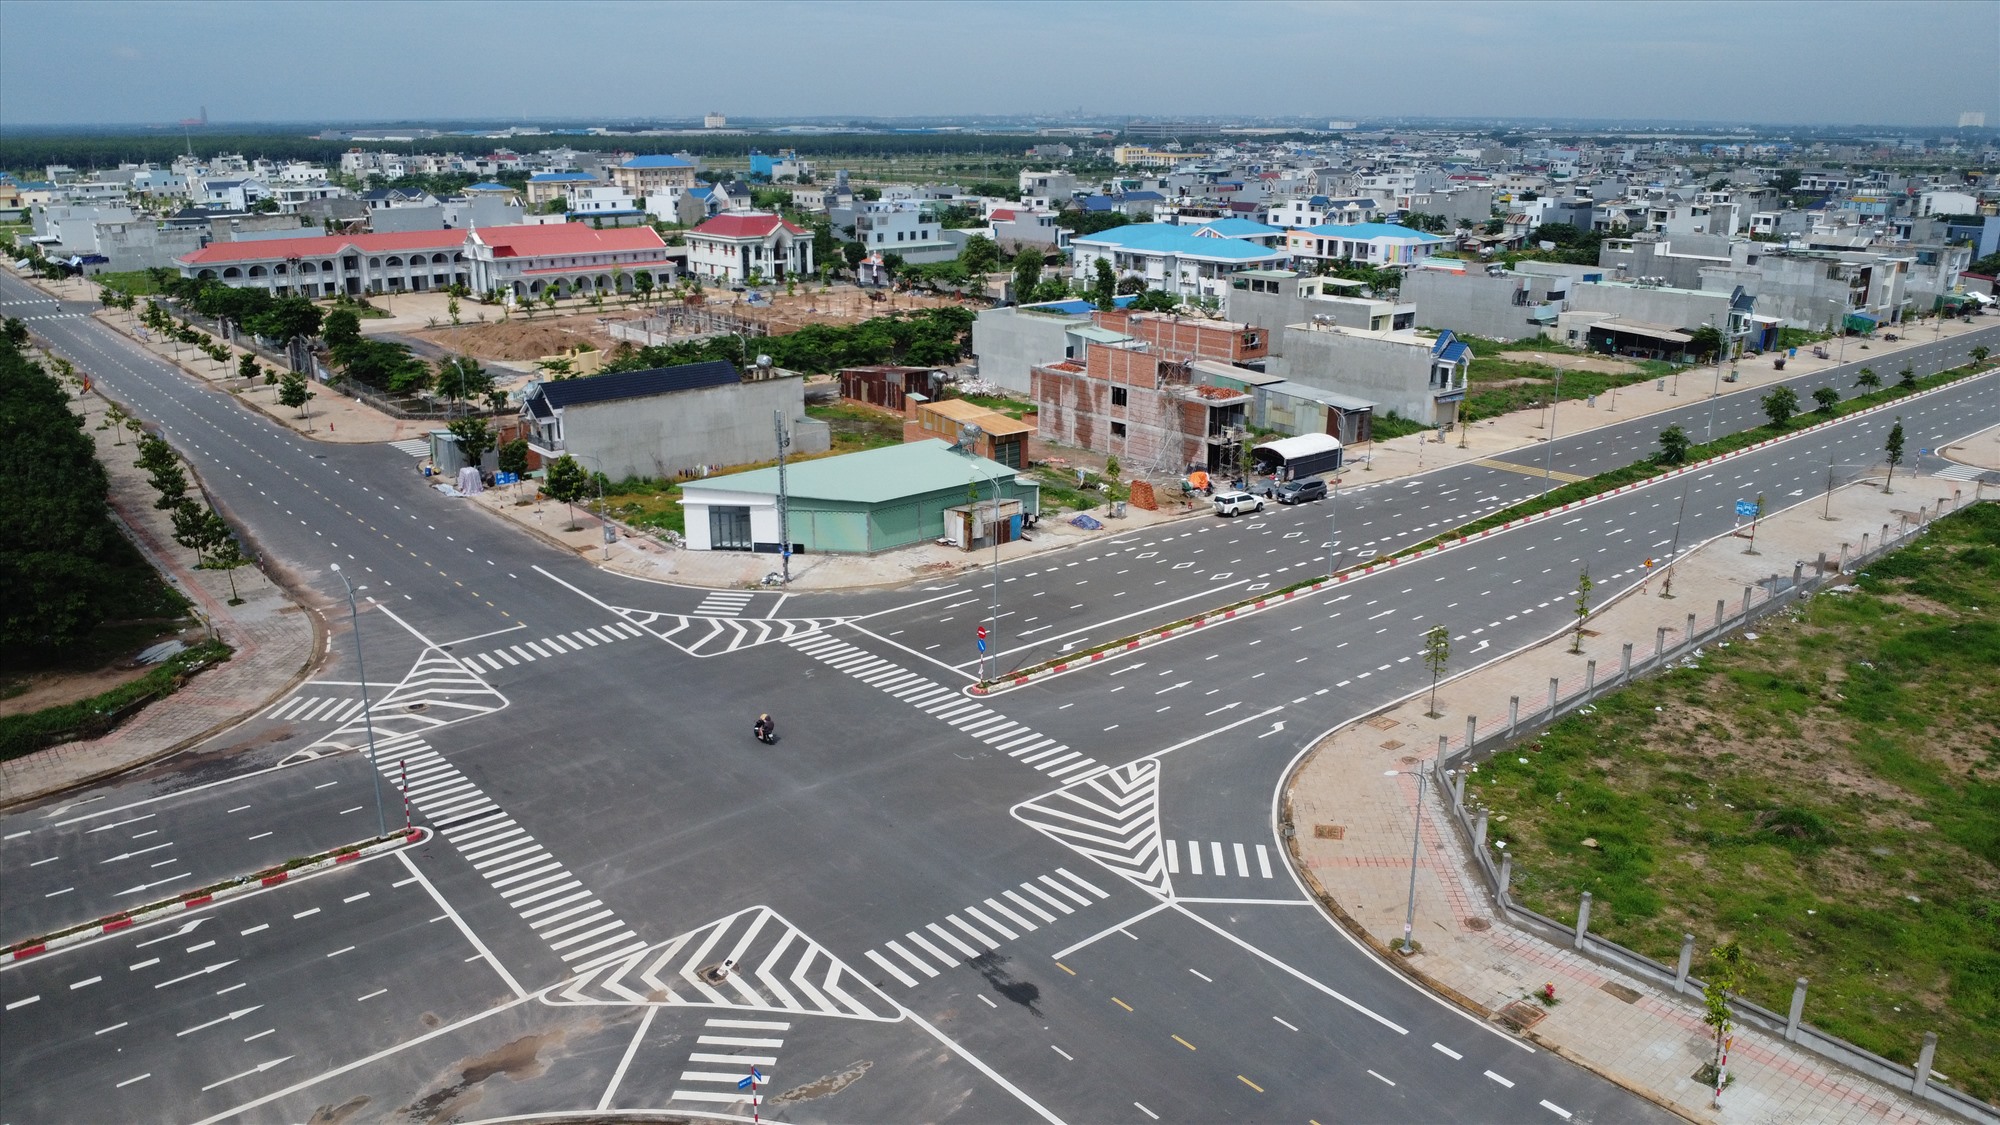 Đặc biệt, với lợi thế có sân bay Long Thành tọa lạc trên địa bàn, đô thị Long Thành cũng được định hướng trở thành thành phố sân bay, cửa ngõ quốc tế phát triển bền vững, tạo tiền đề phát triển công nghệ xanh - sinh thái thân thiện với môi trường, thích ứng biến đổi khí hậu.